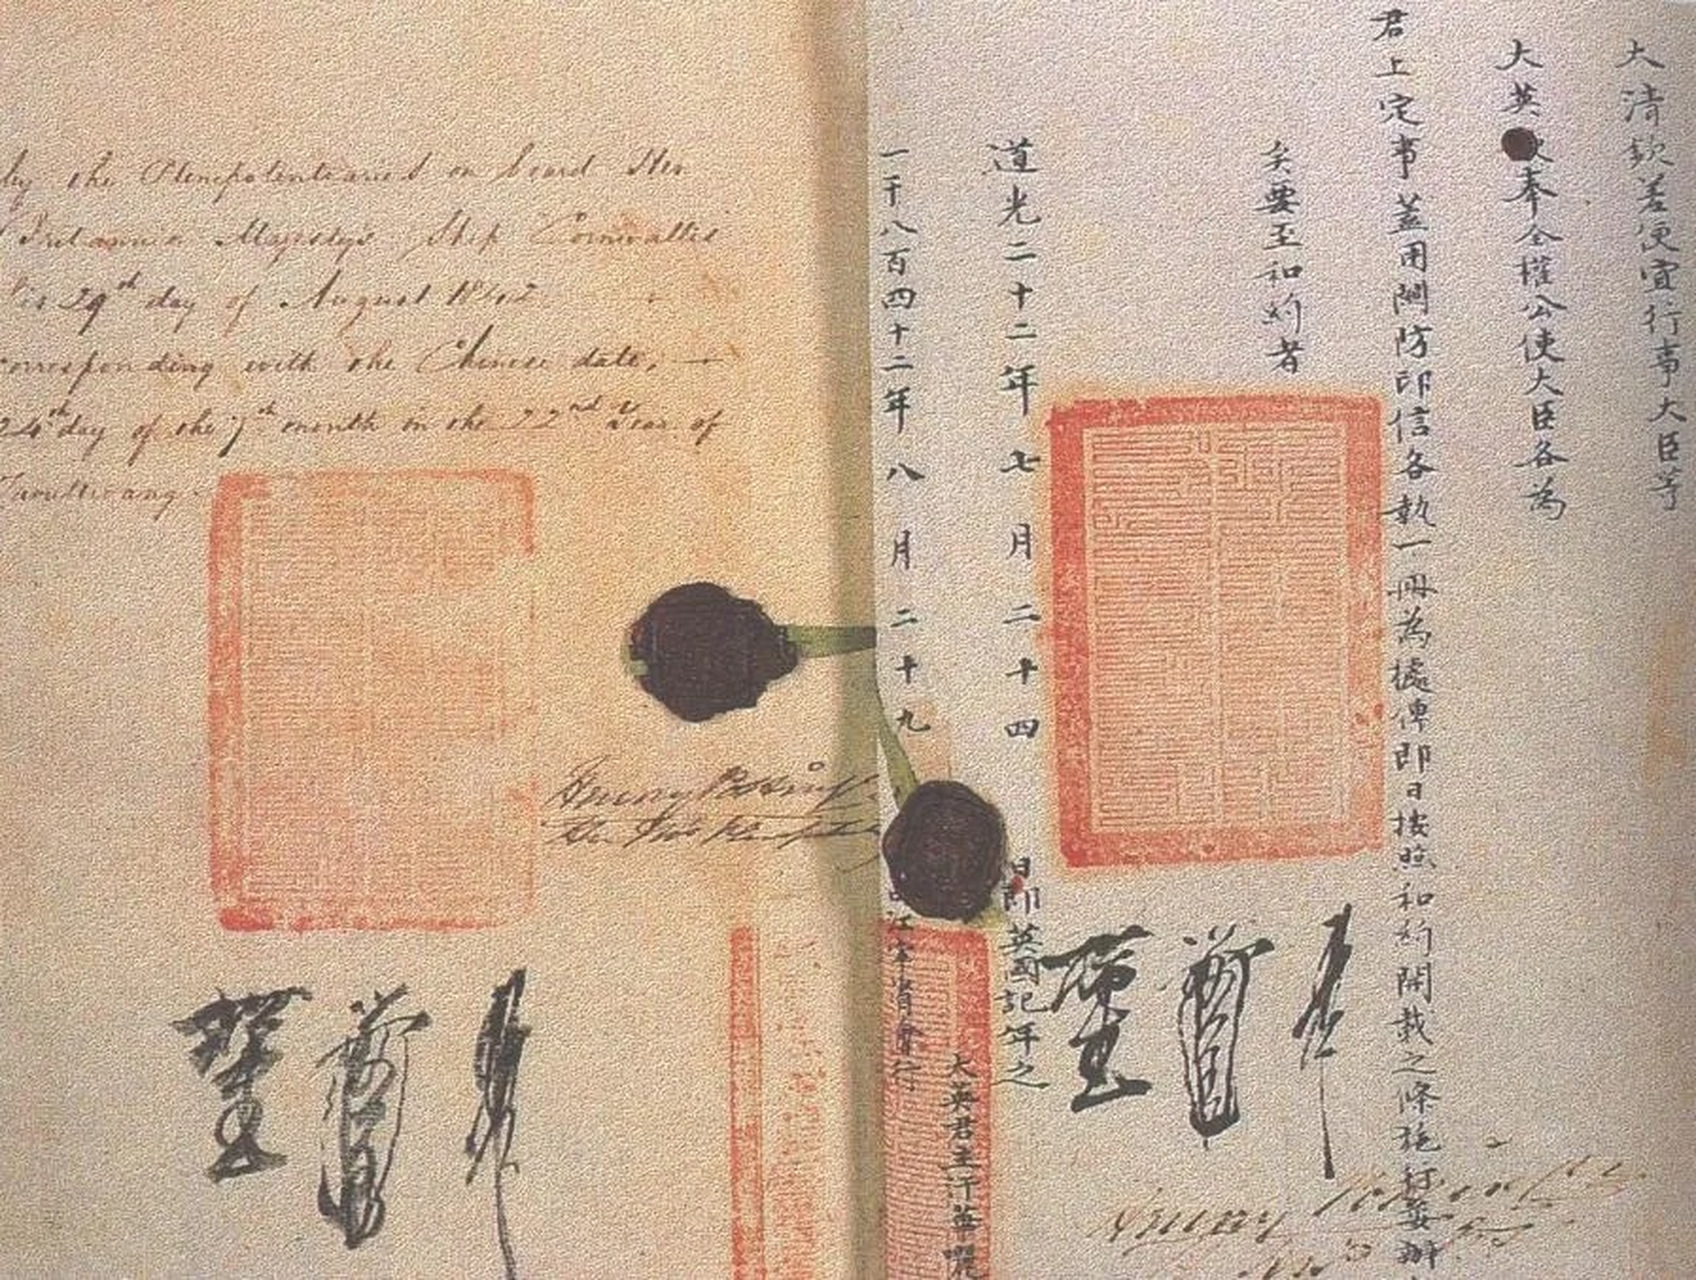 中英《南京条约》是我国近代史上第一个屈辱,不平等的条约,签署于